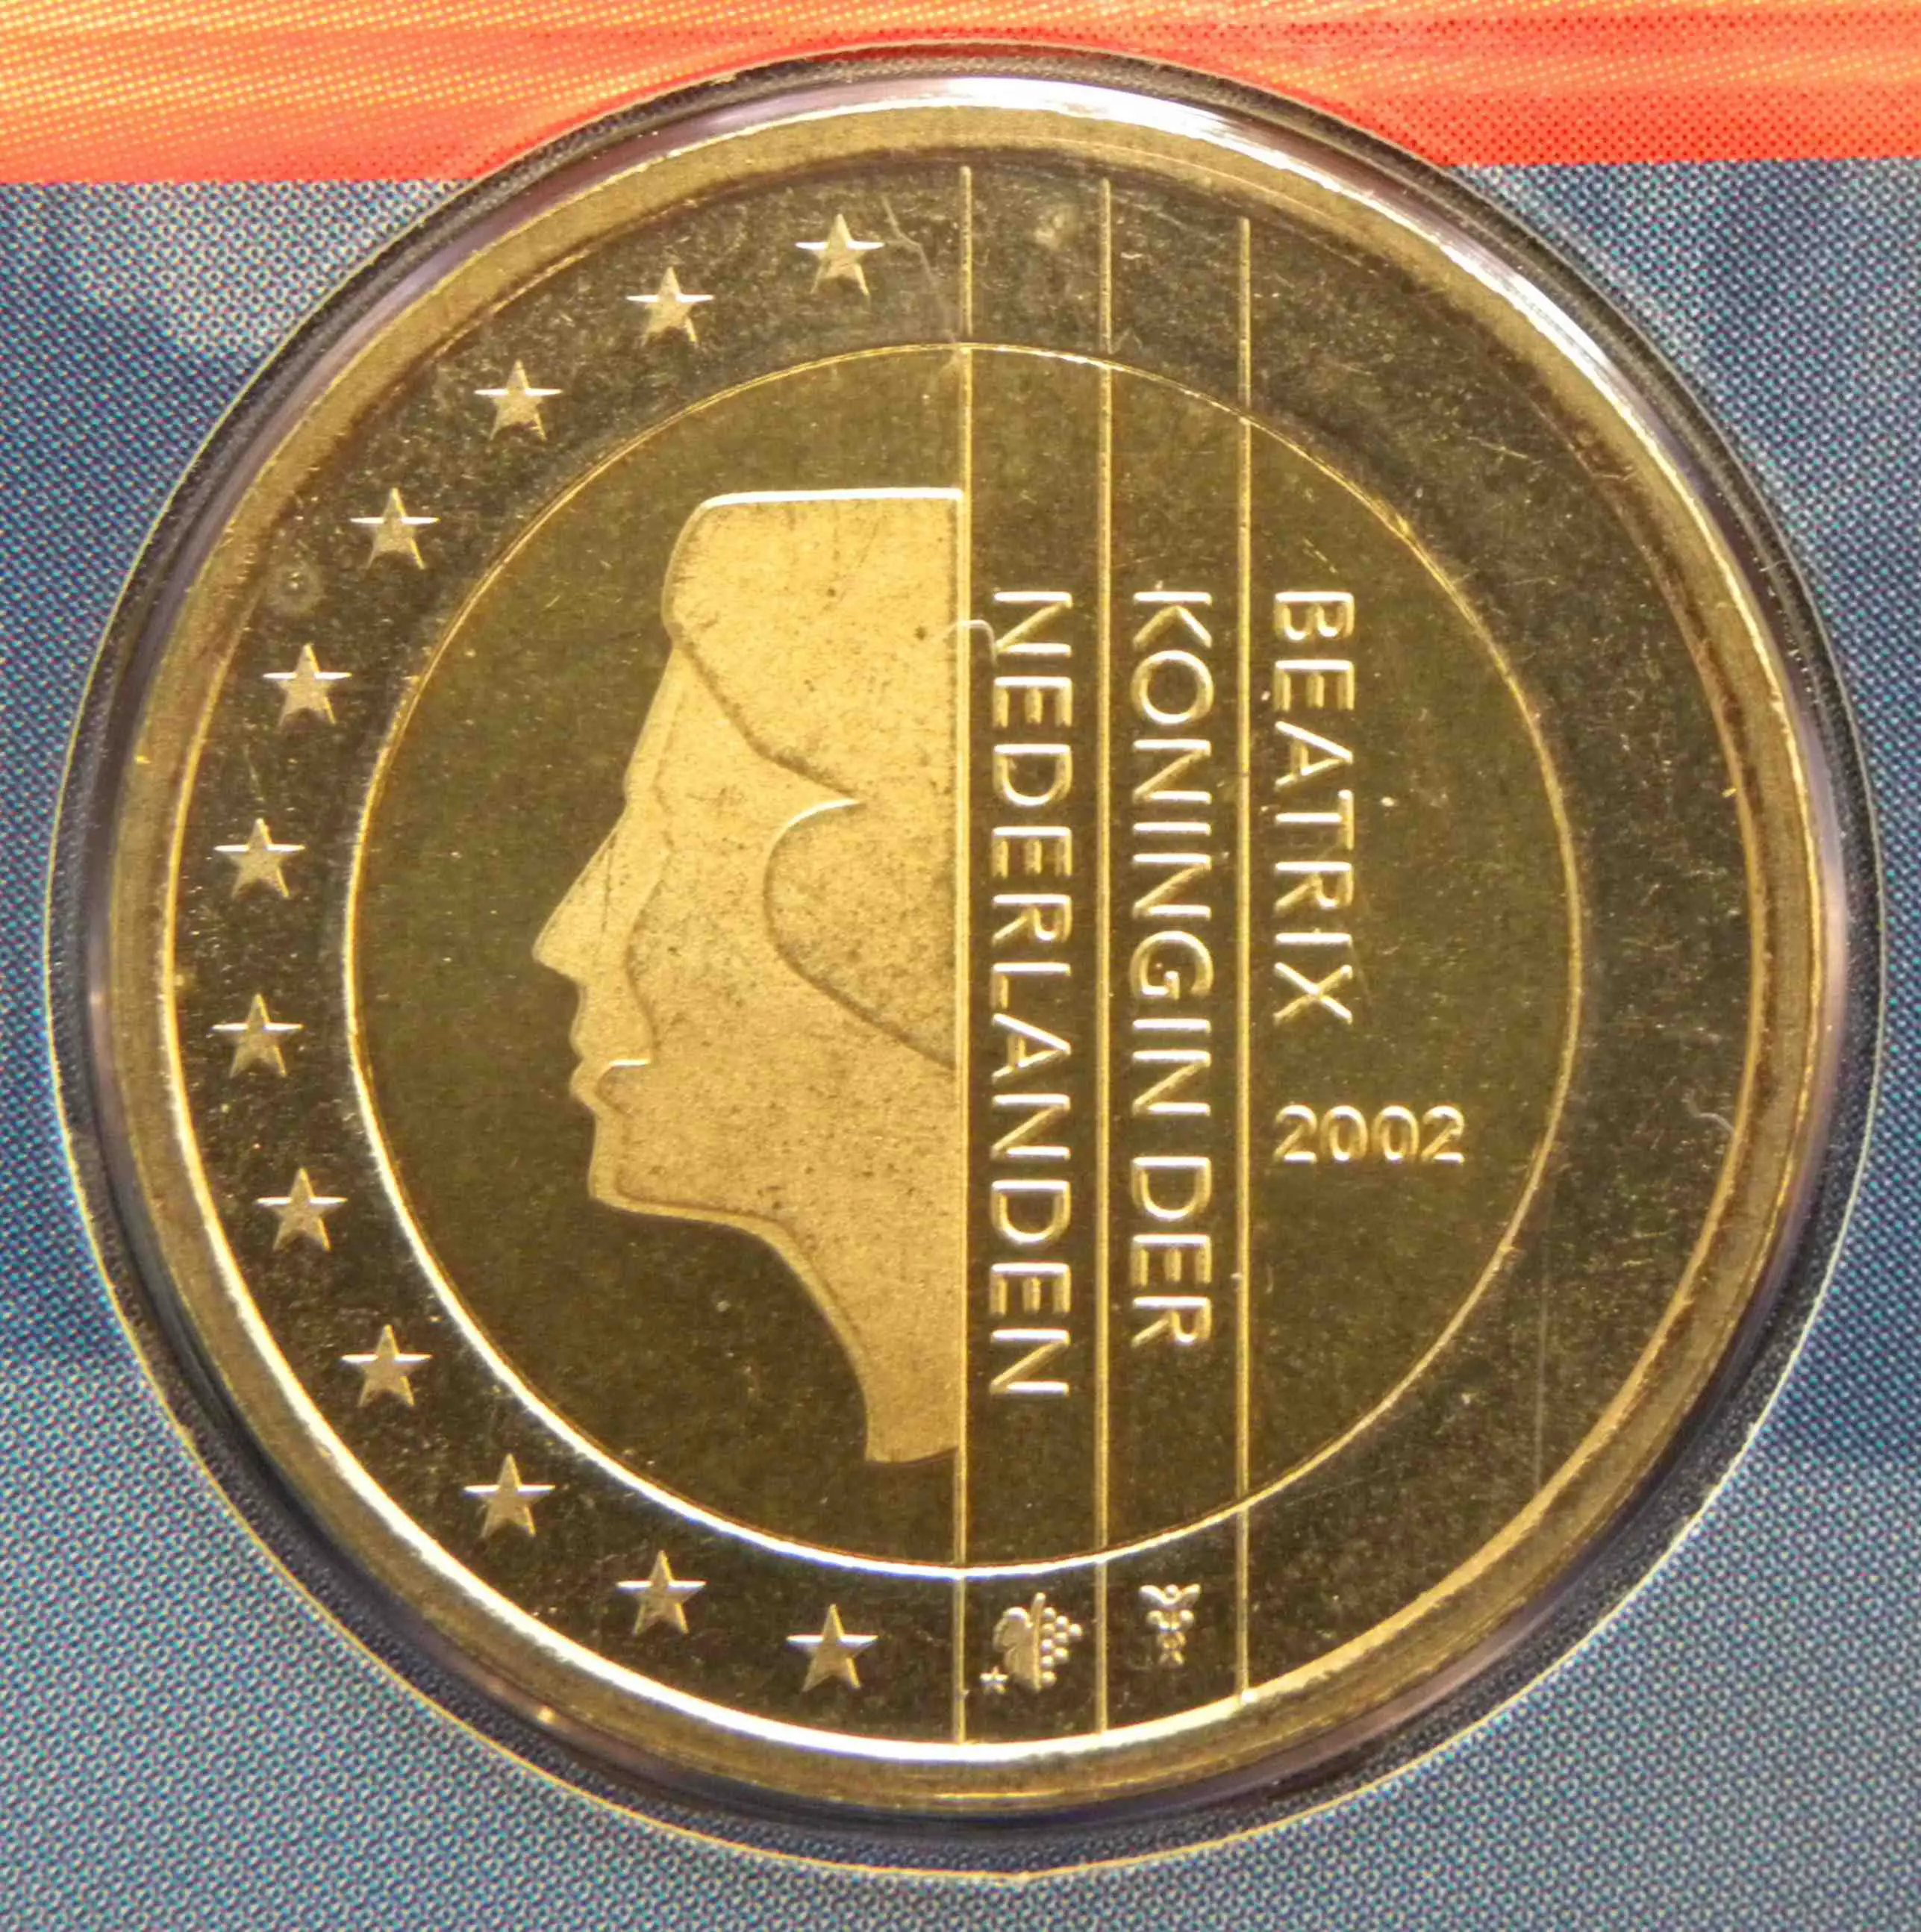 Niederlande 2 Euro Münze 2002 - euro-muenzen.tv - Der Online Euromünzen